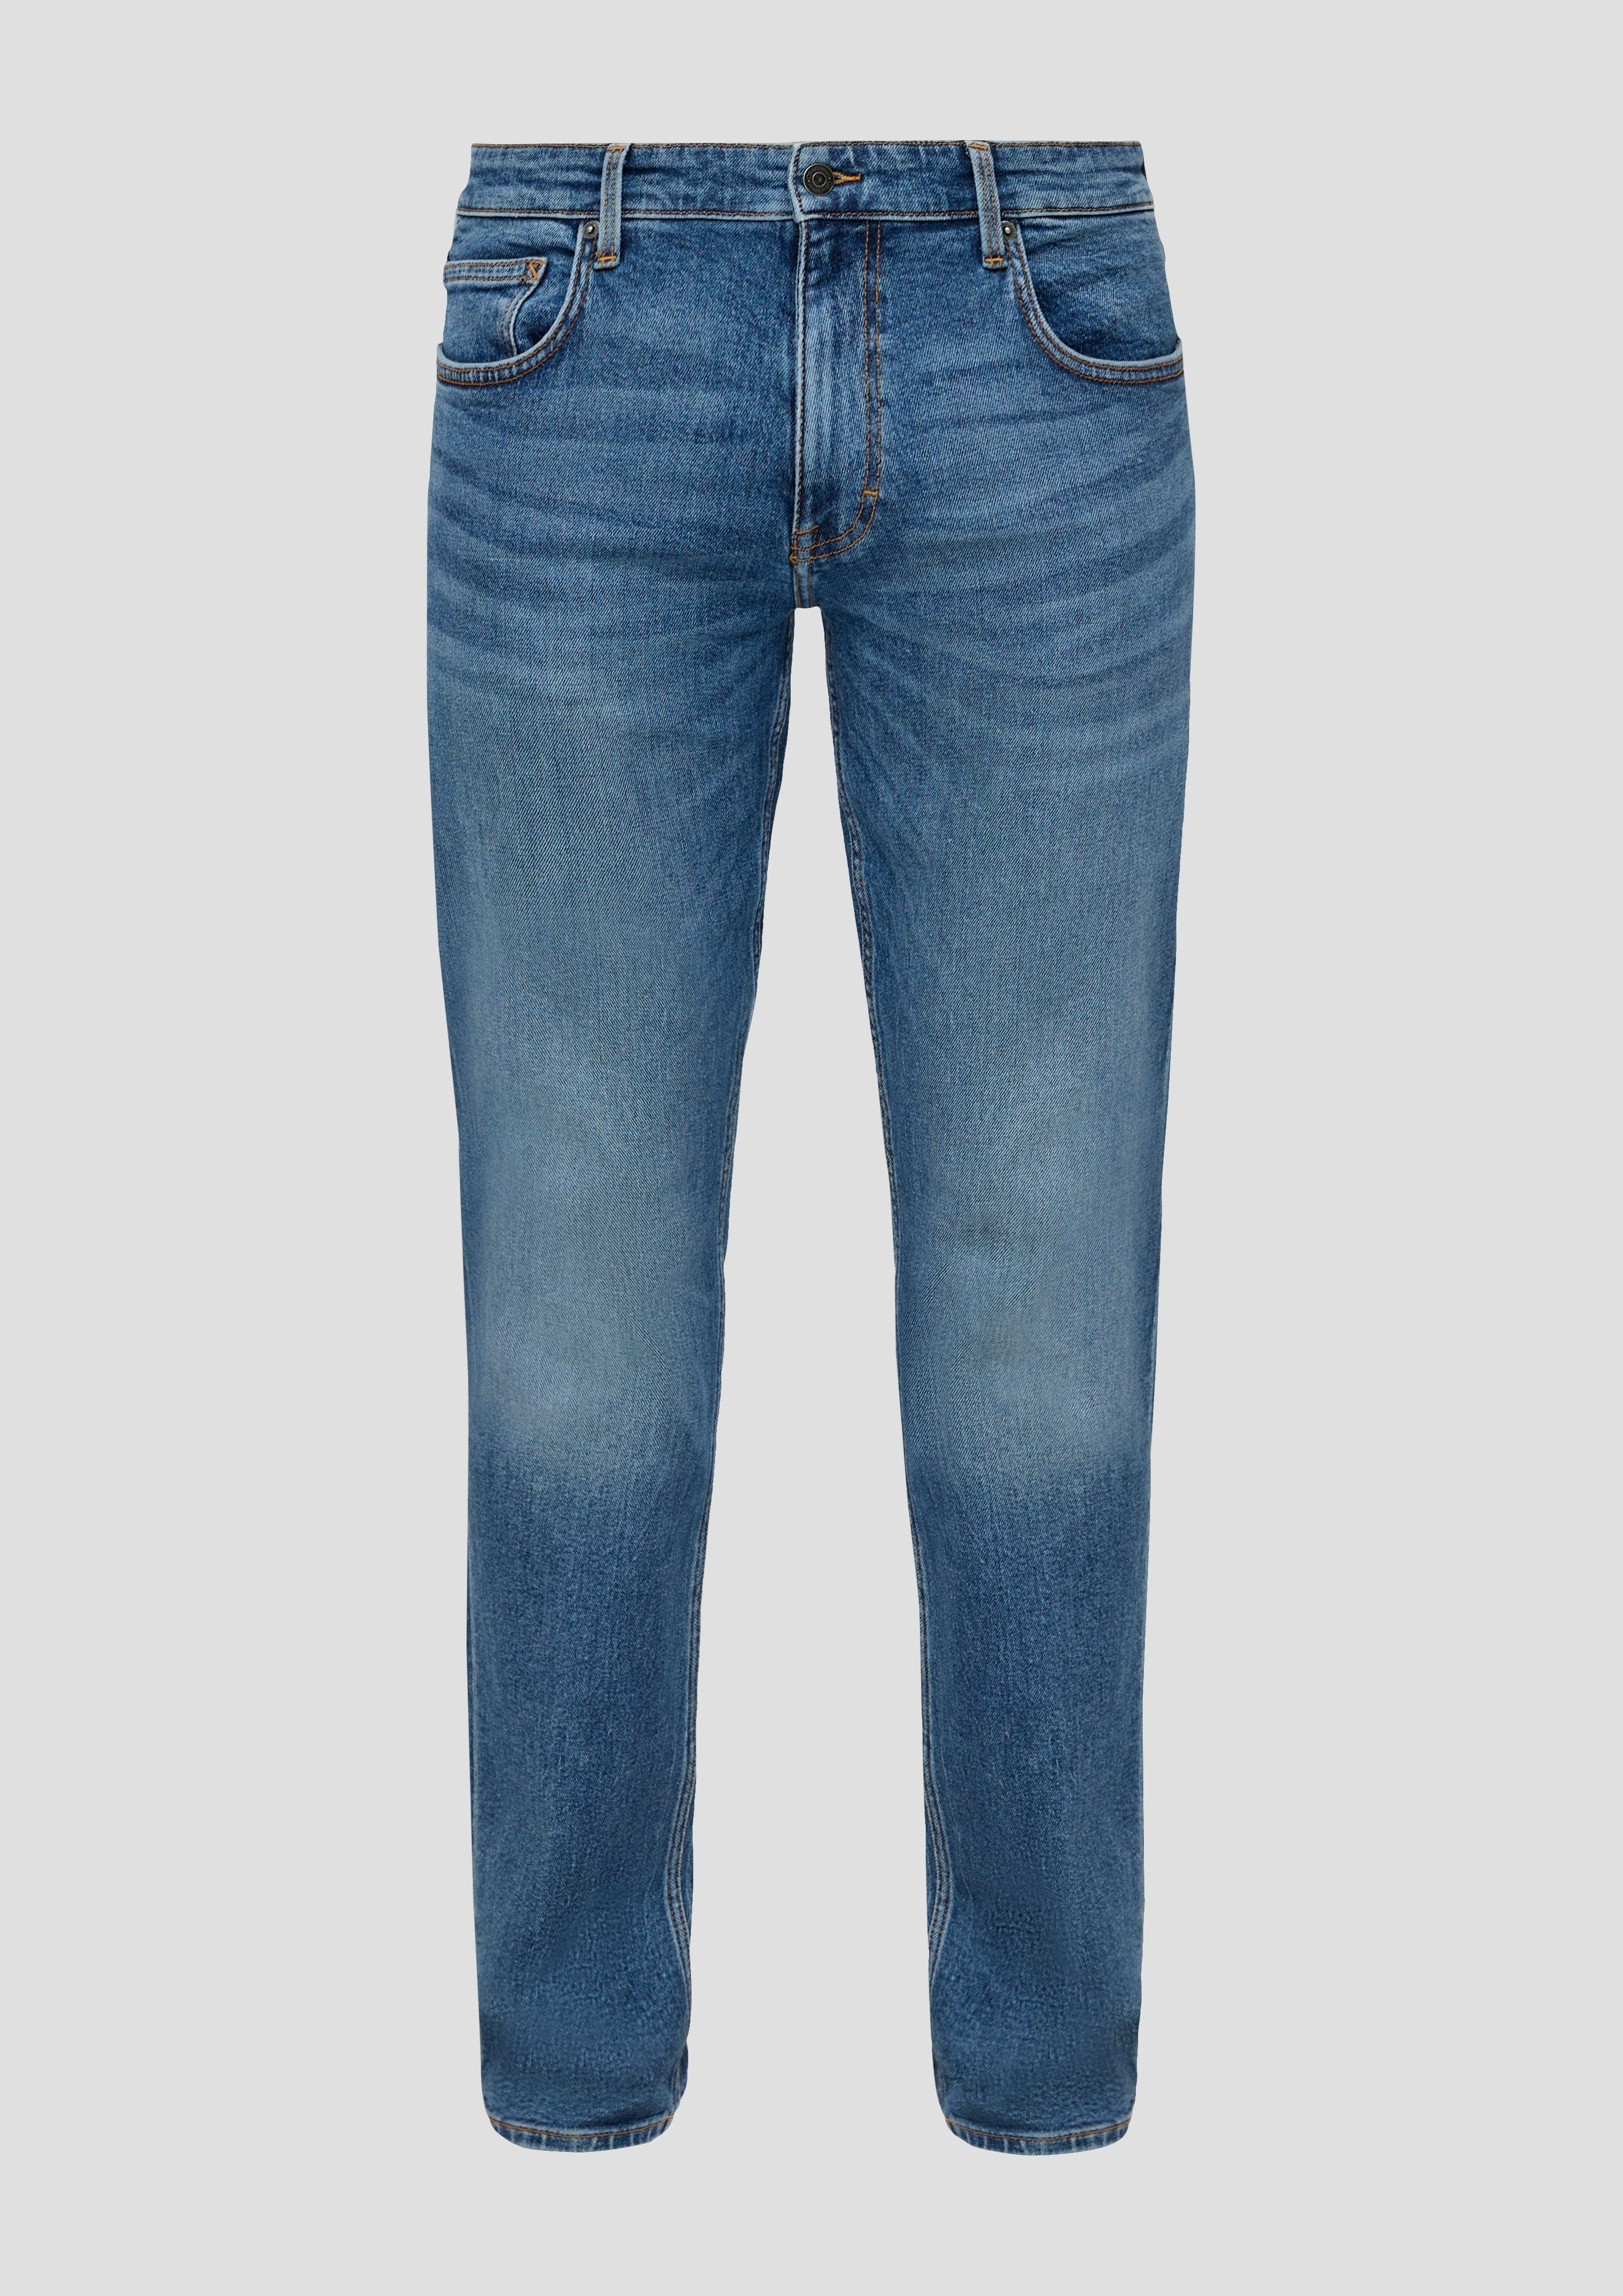 Gesäßtaschen blue QS Jeans Bequeme mit den Nahtdesign 30 an